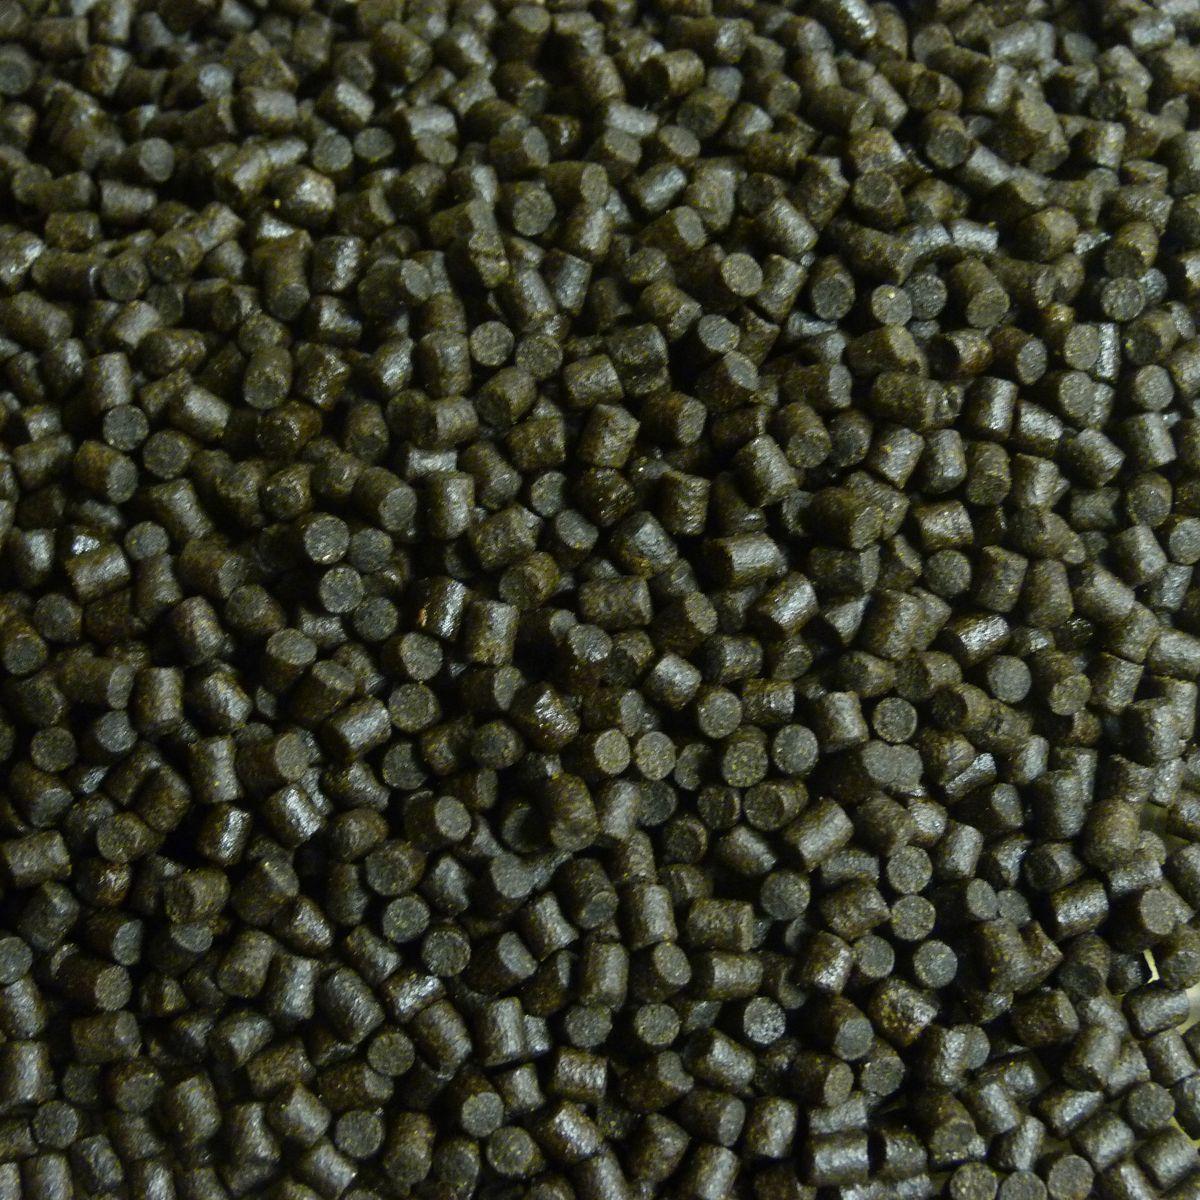 Coppens Halibut pellets | 14 mm